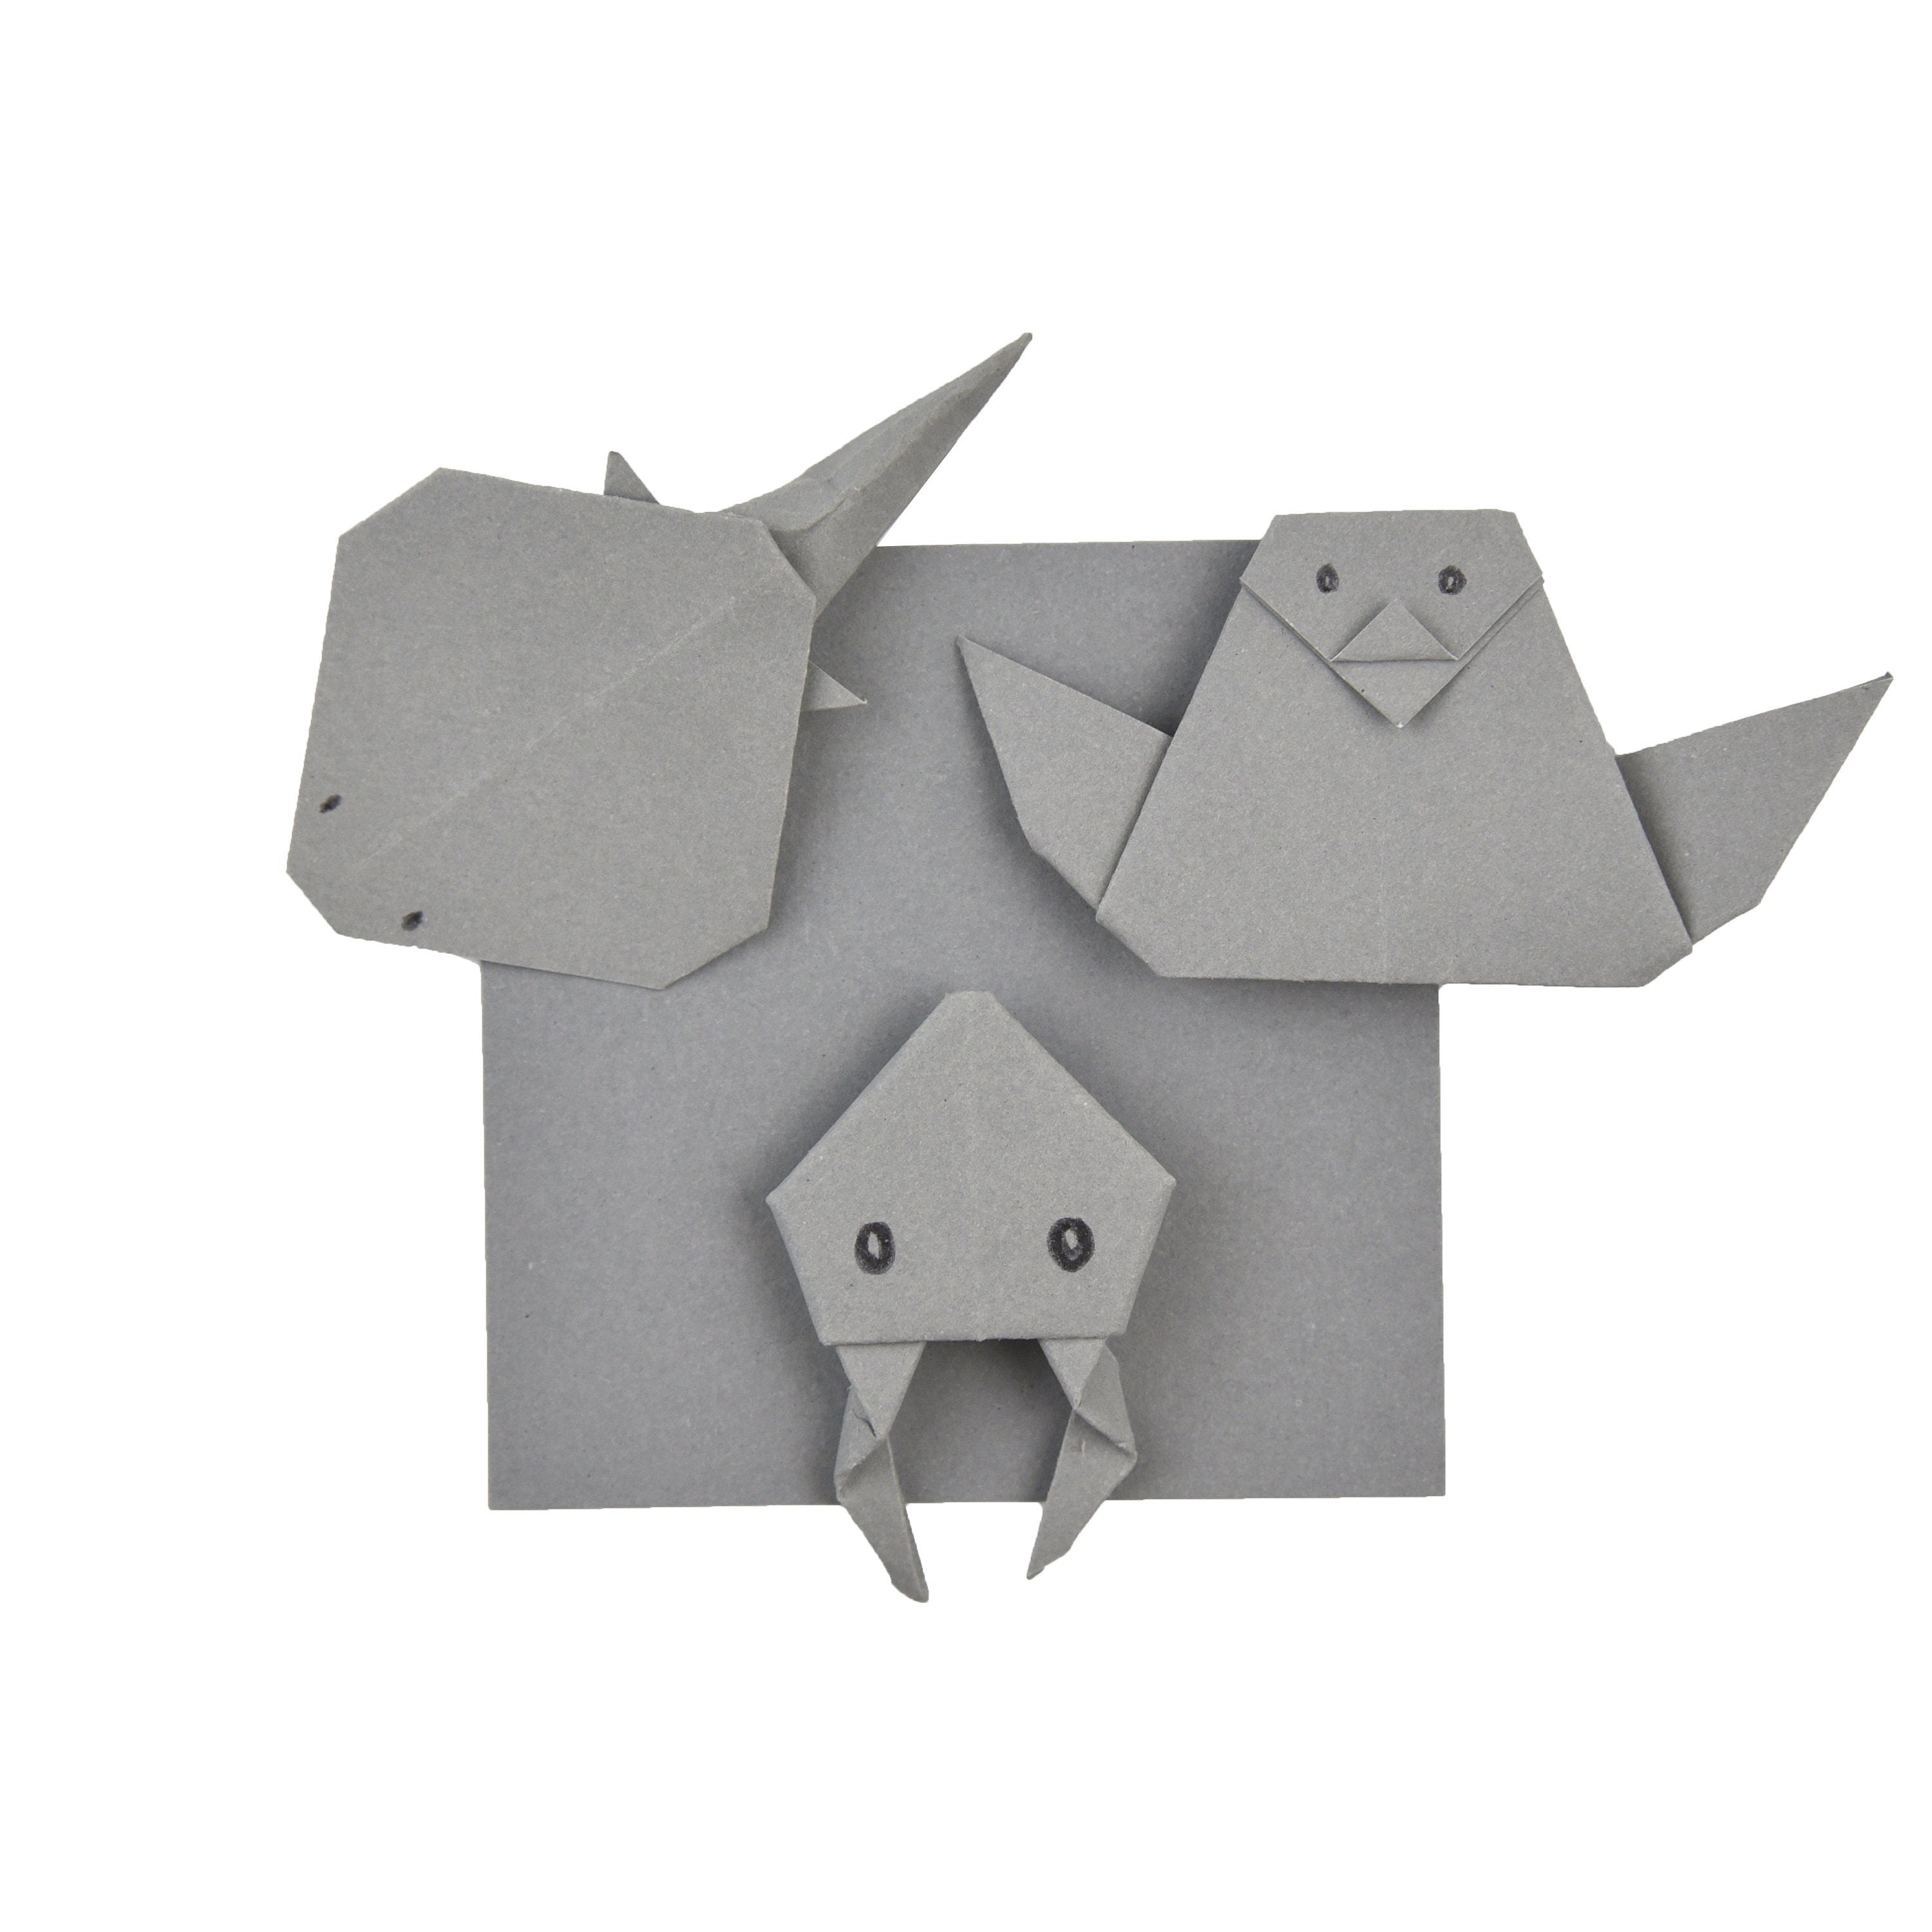 100 fogli di carta origami grigi - 3x3 pollici - Confezione di carta quadrata per piegare, gru origami e decorazioni - S10